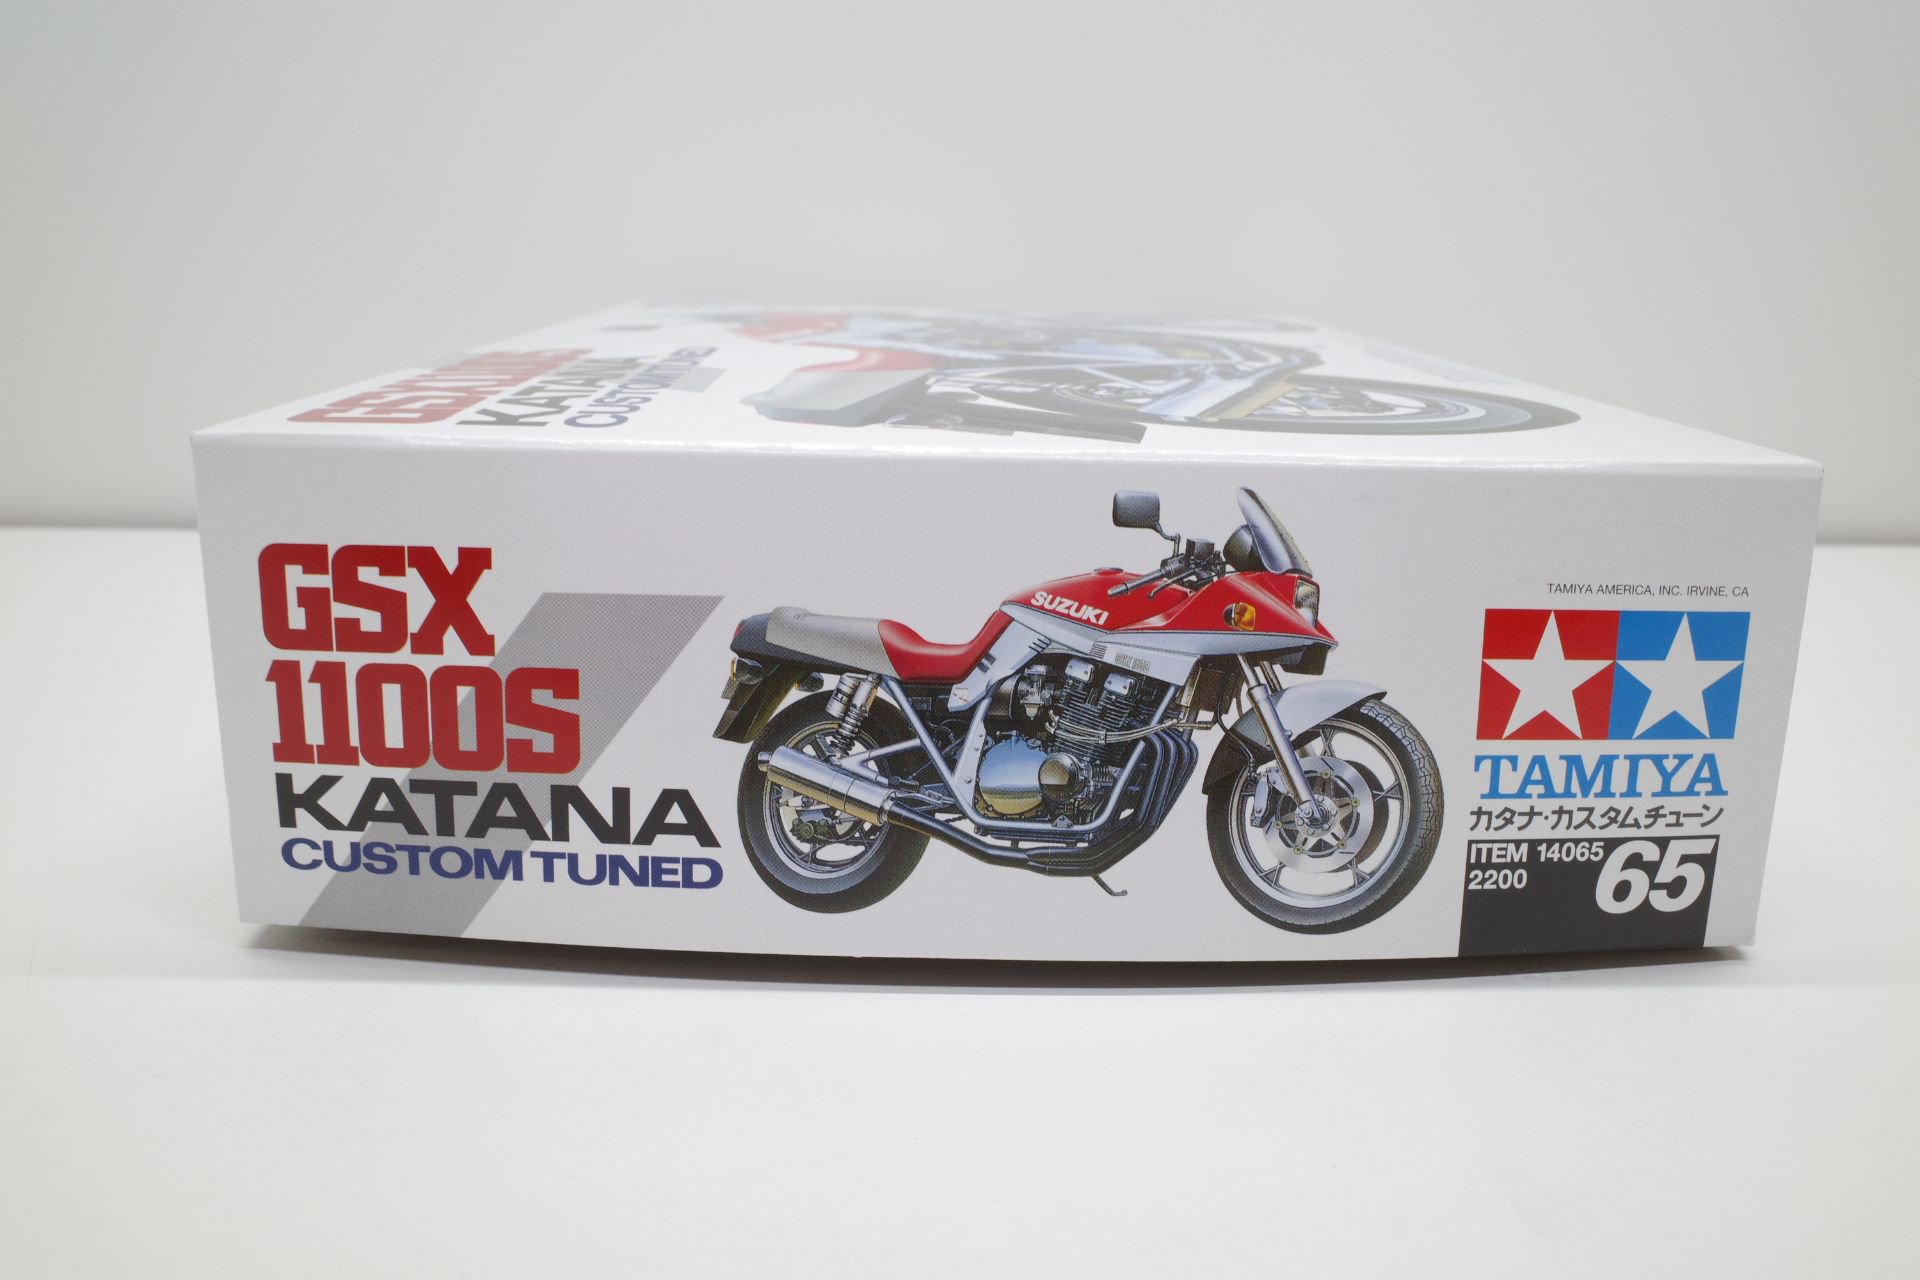 タミヤ 12 オートバイシリーズ No.65 スズキ GSX1100S カタナ カスタムチューン プラモデル 14065